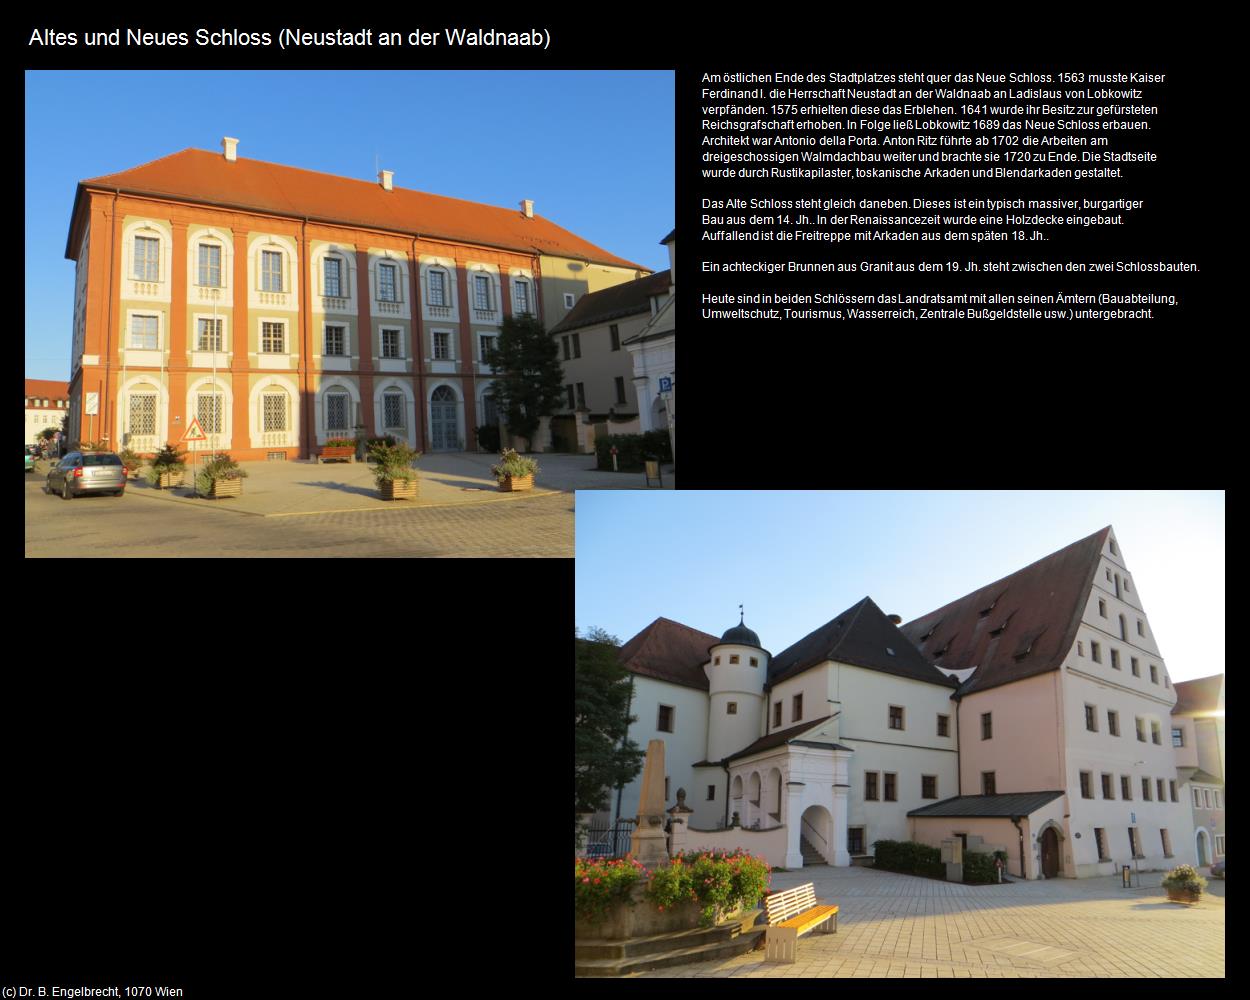 Altes und neues Schloss (Neustadt an der Waldnaab) in Kulturatlas-BAYERN